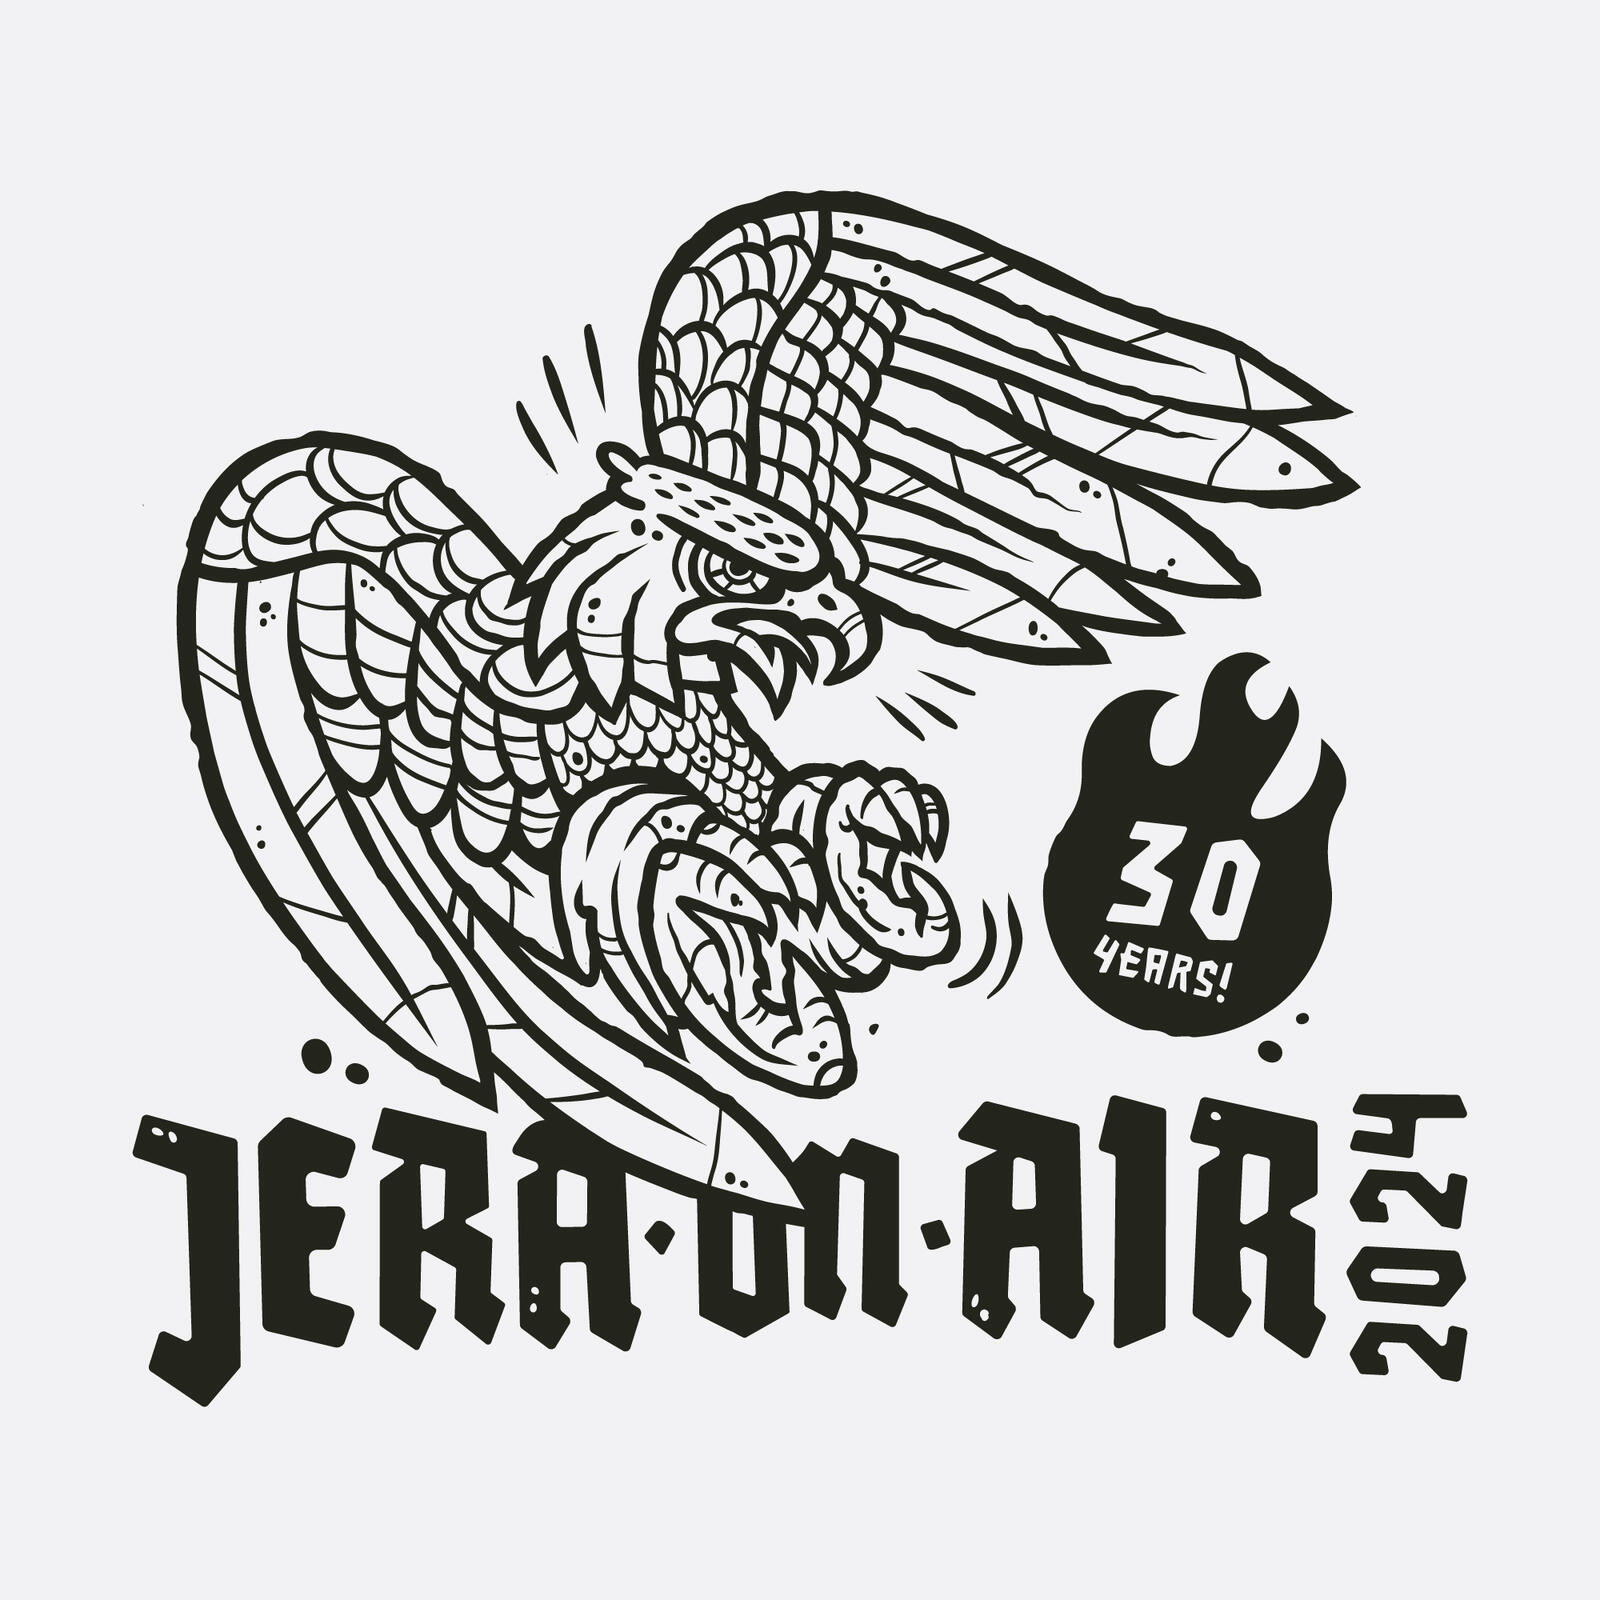 Artwork for Jera On Air festival